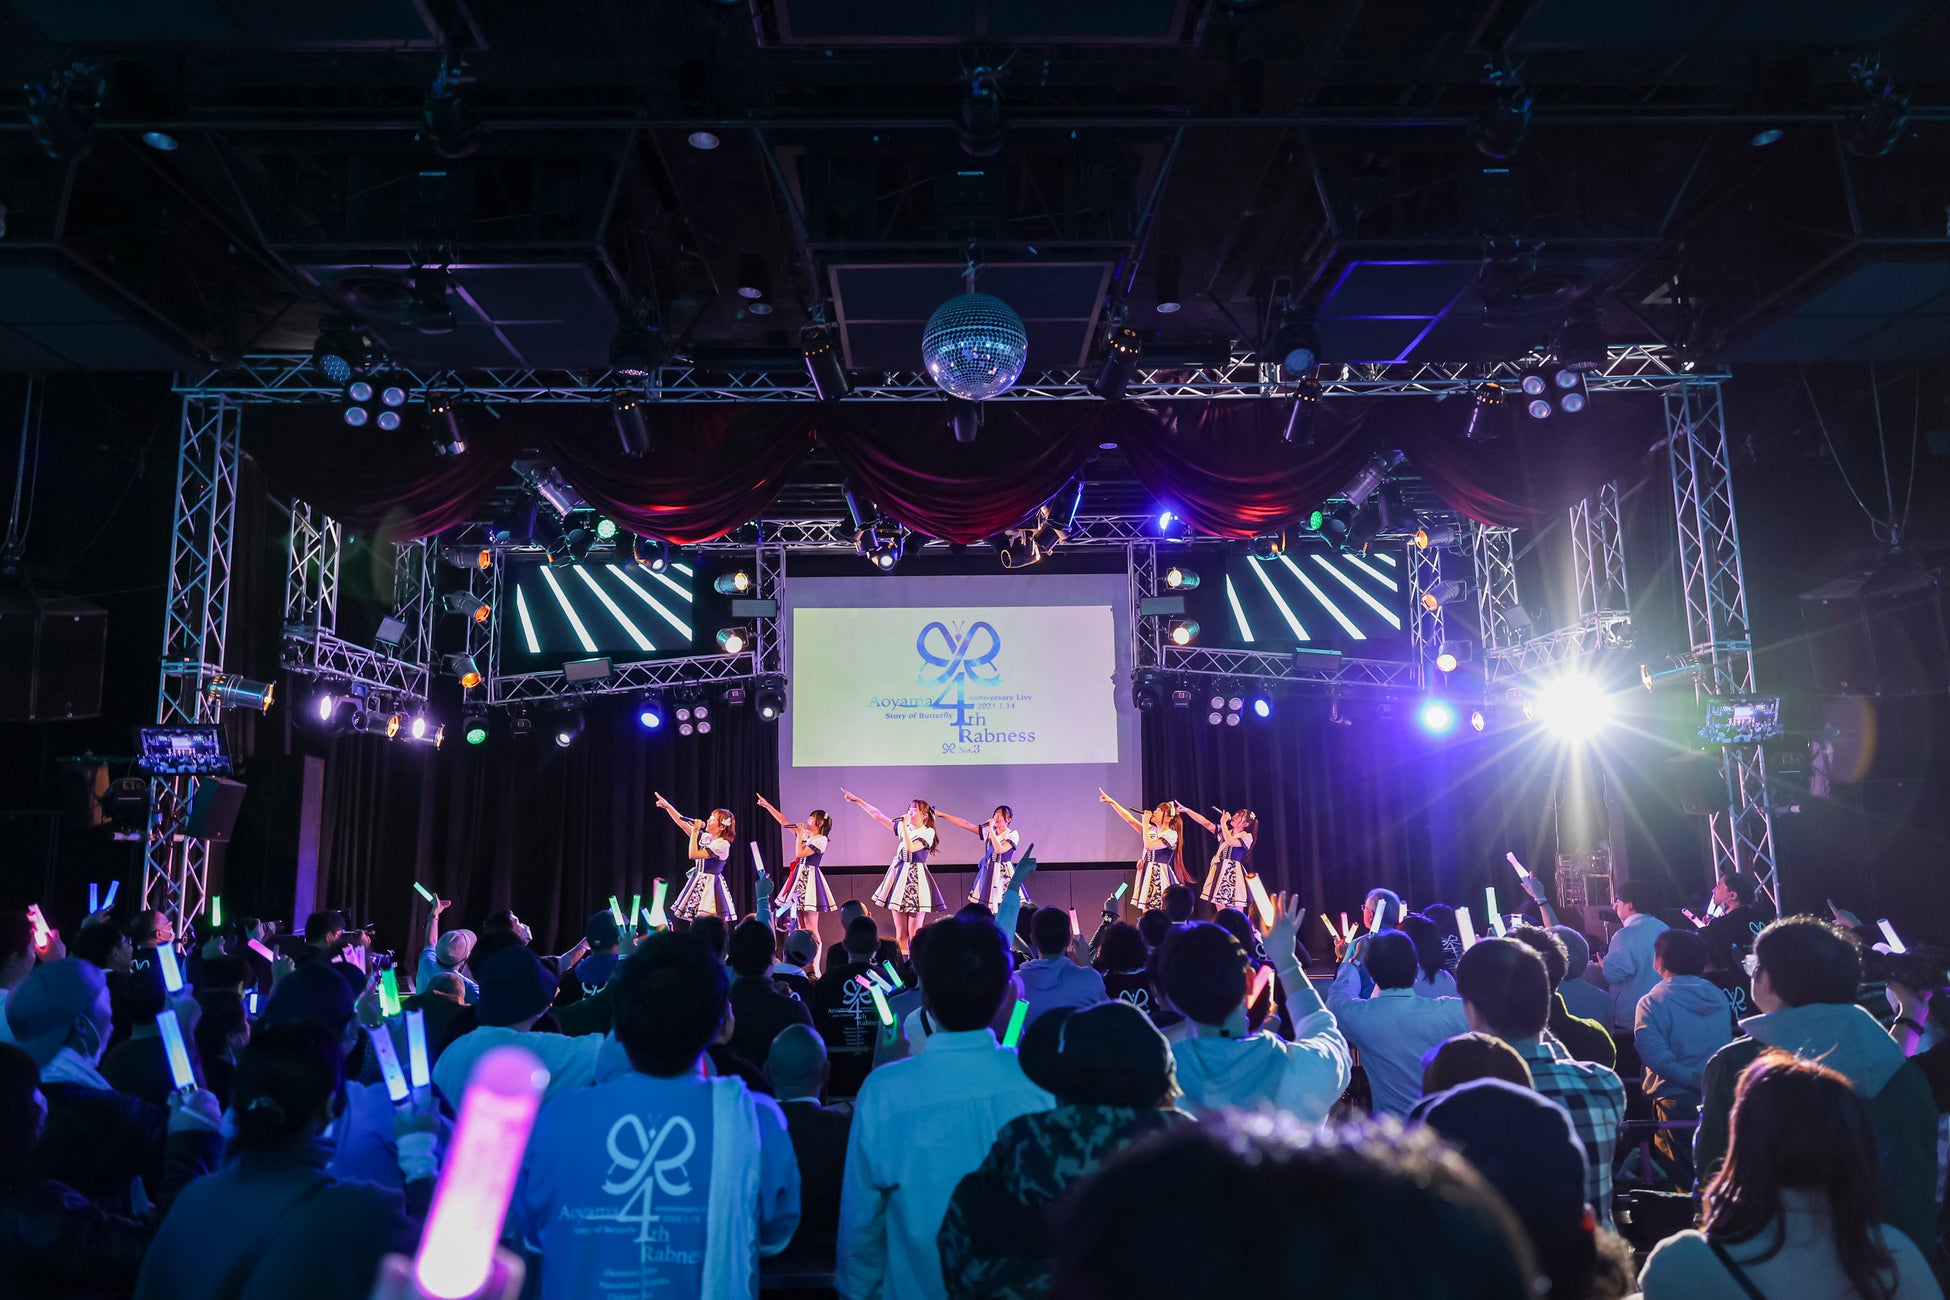 青山Rabness 4th anniversary Live満員の新宿ReNYで開催！！